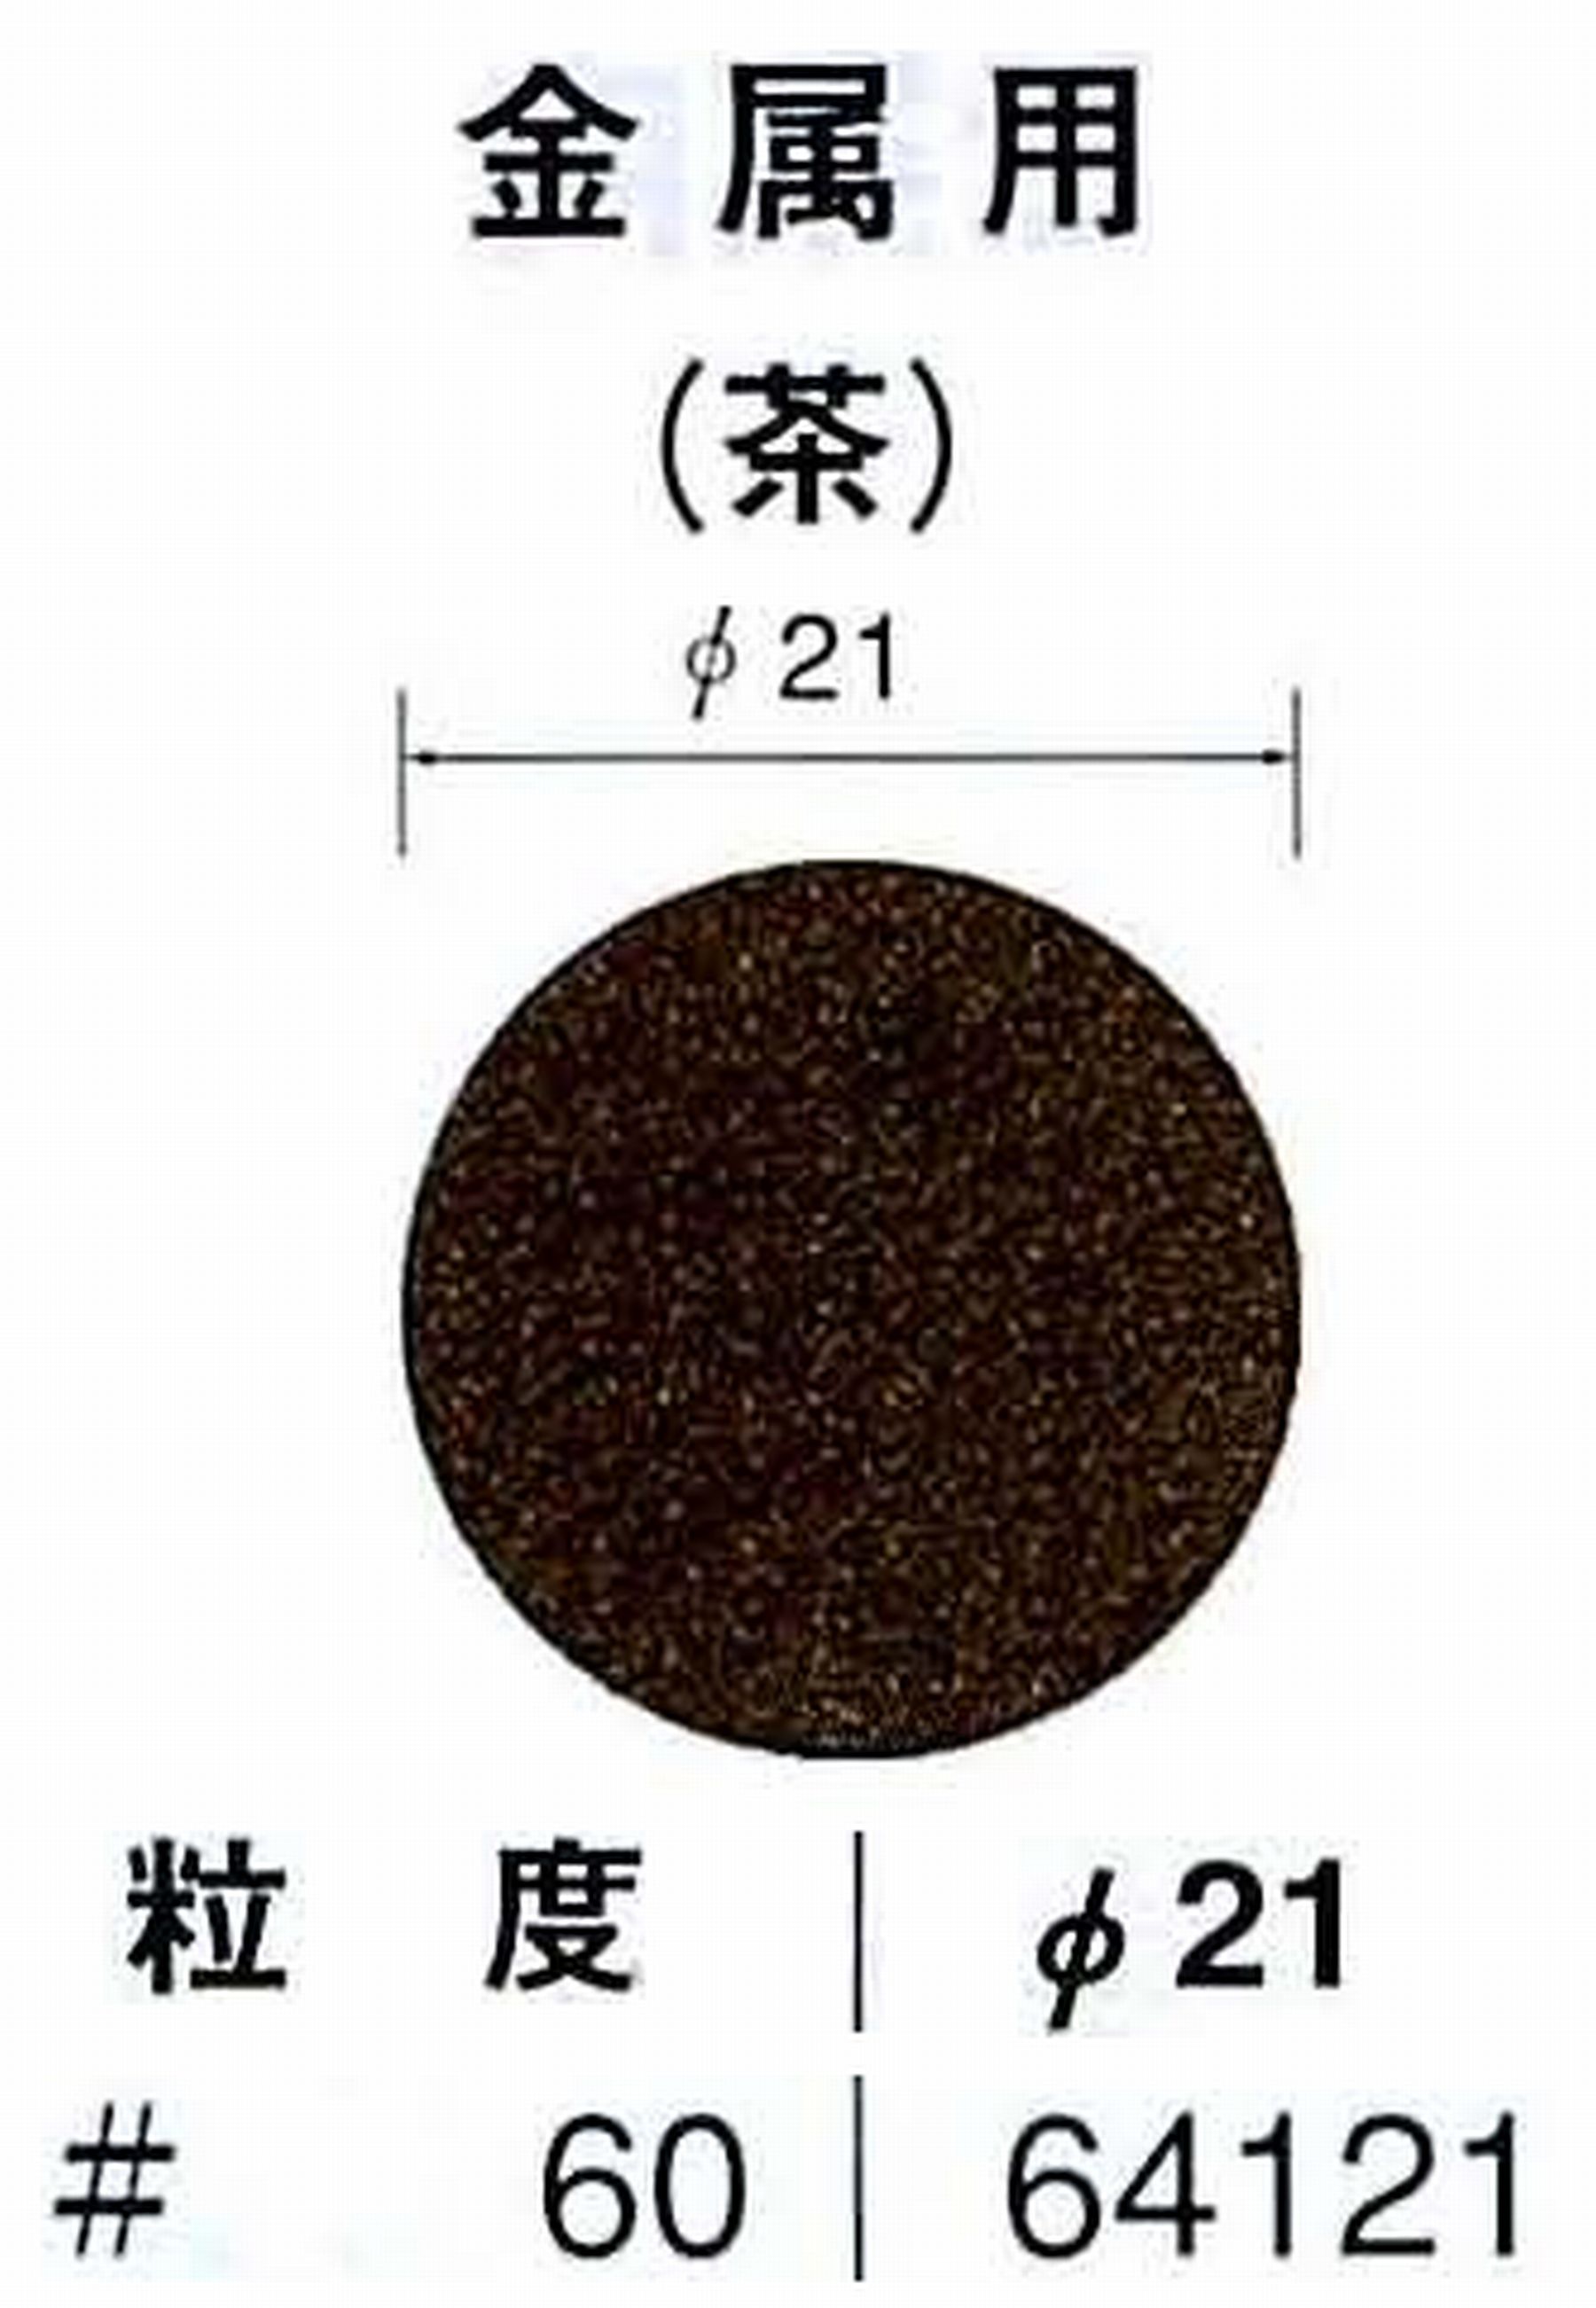 ナカニシ/NAKANISHI アングルグラインダ(電動・エアー) アングルアタッチメント専用工具 サンドペーパーディスク(布基材タイプ)裏面のり処理 64121